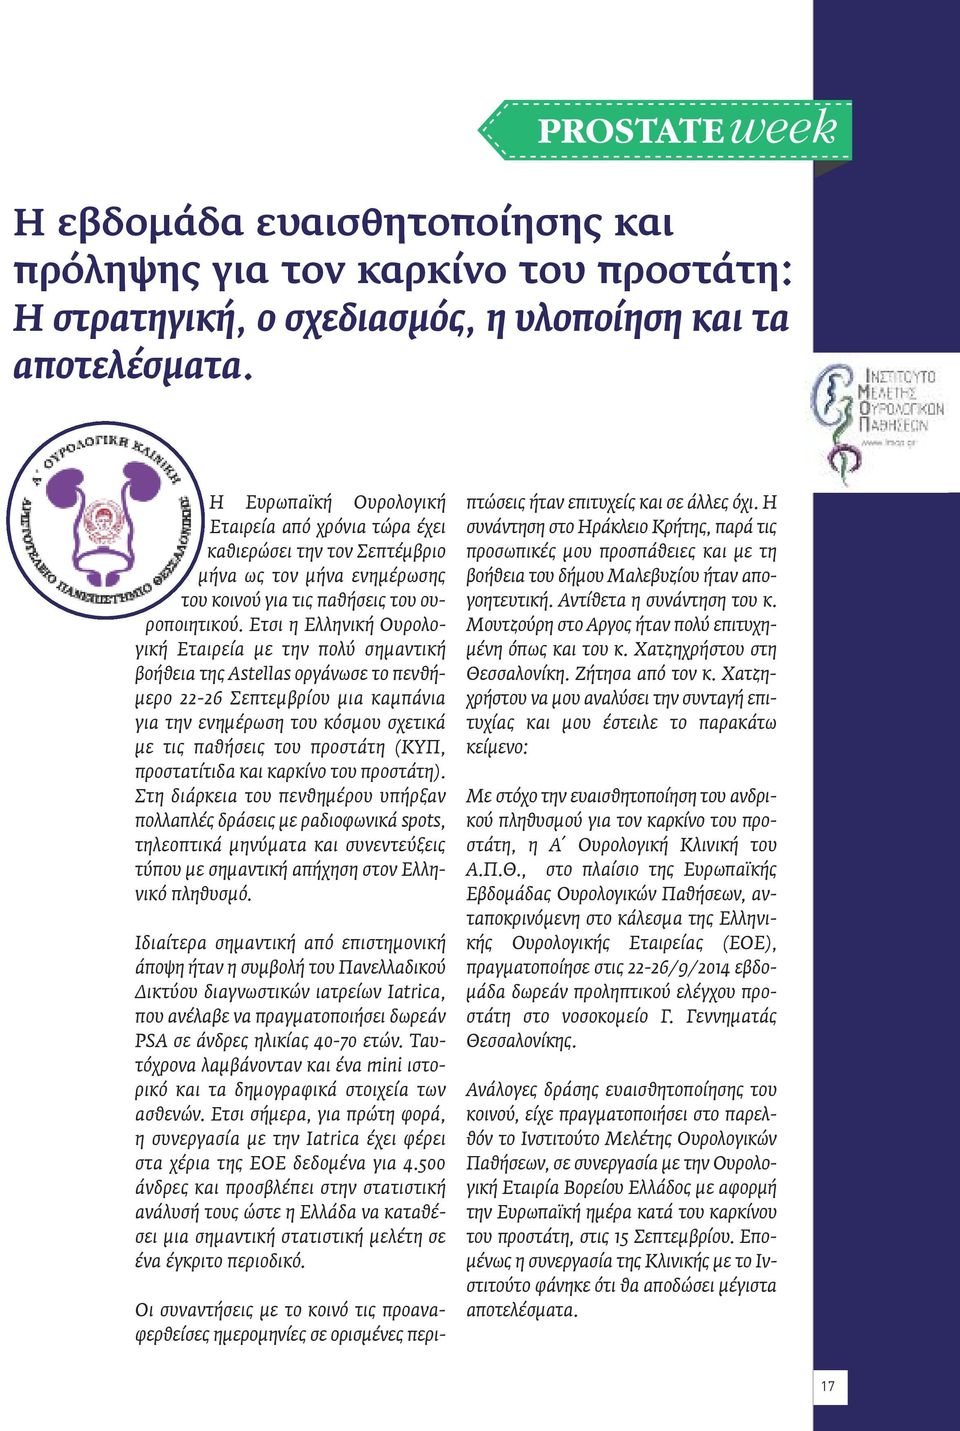 Ετσι η Ελληνική Ουρολογική Εταιρεία με την πολύ σημαντική βοήθεια της Astellas οργάνωσε το πενθήμερο 22-26 Σεπτεμβρίου μια καμπάνια για την ενημέρωση του κόσμου σχετικά με τις παθήσεις του προστάτη